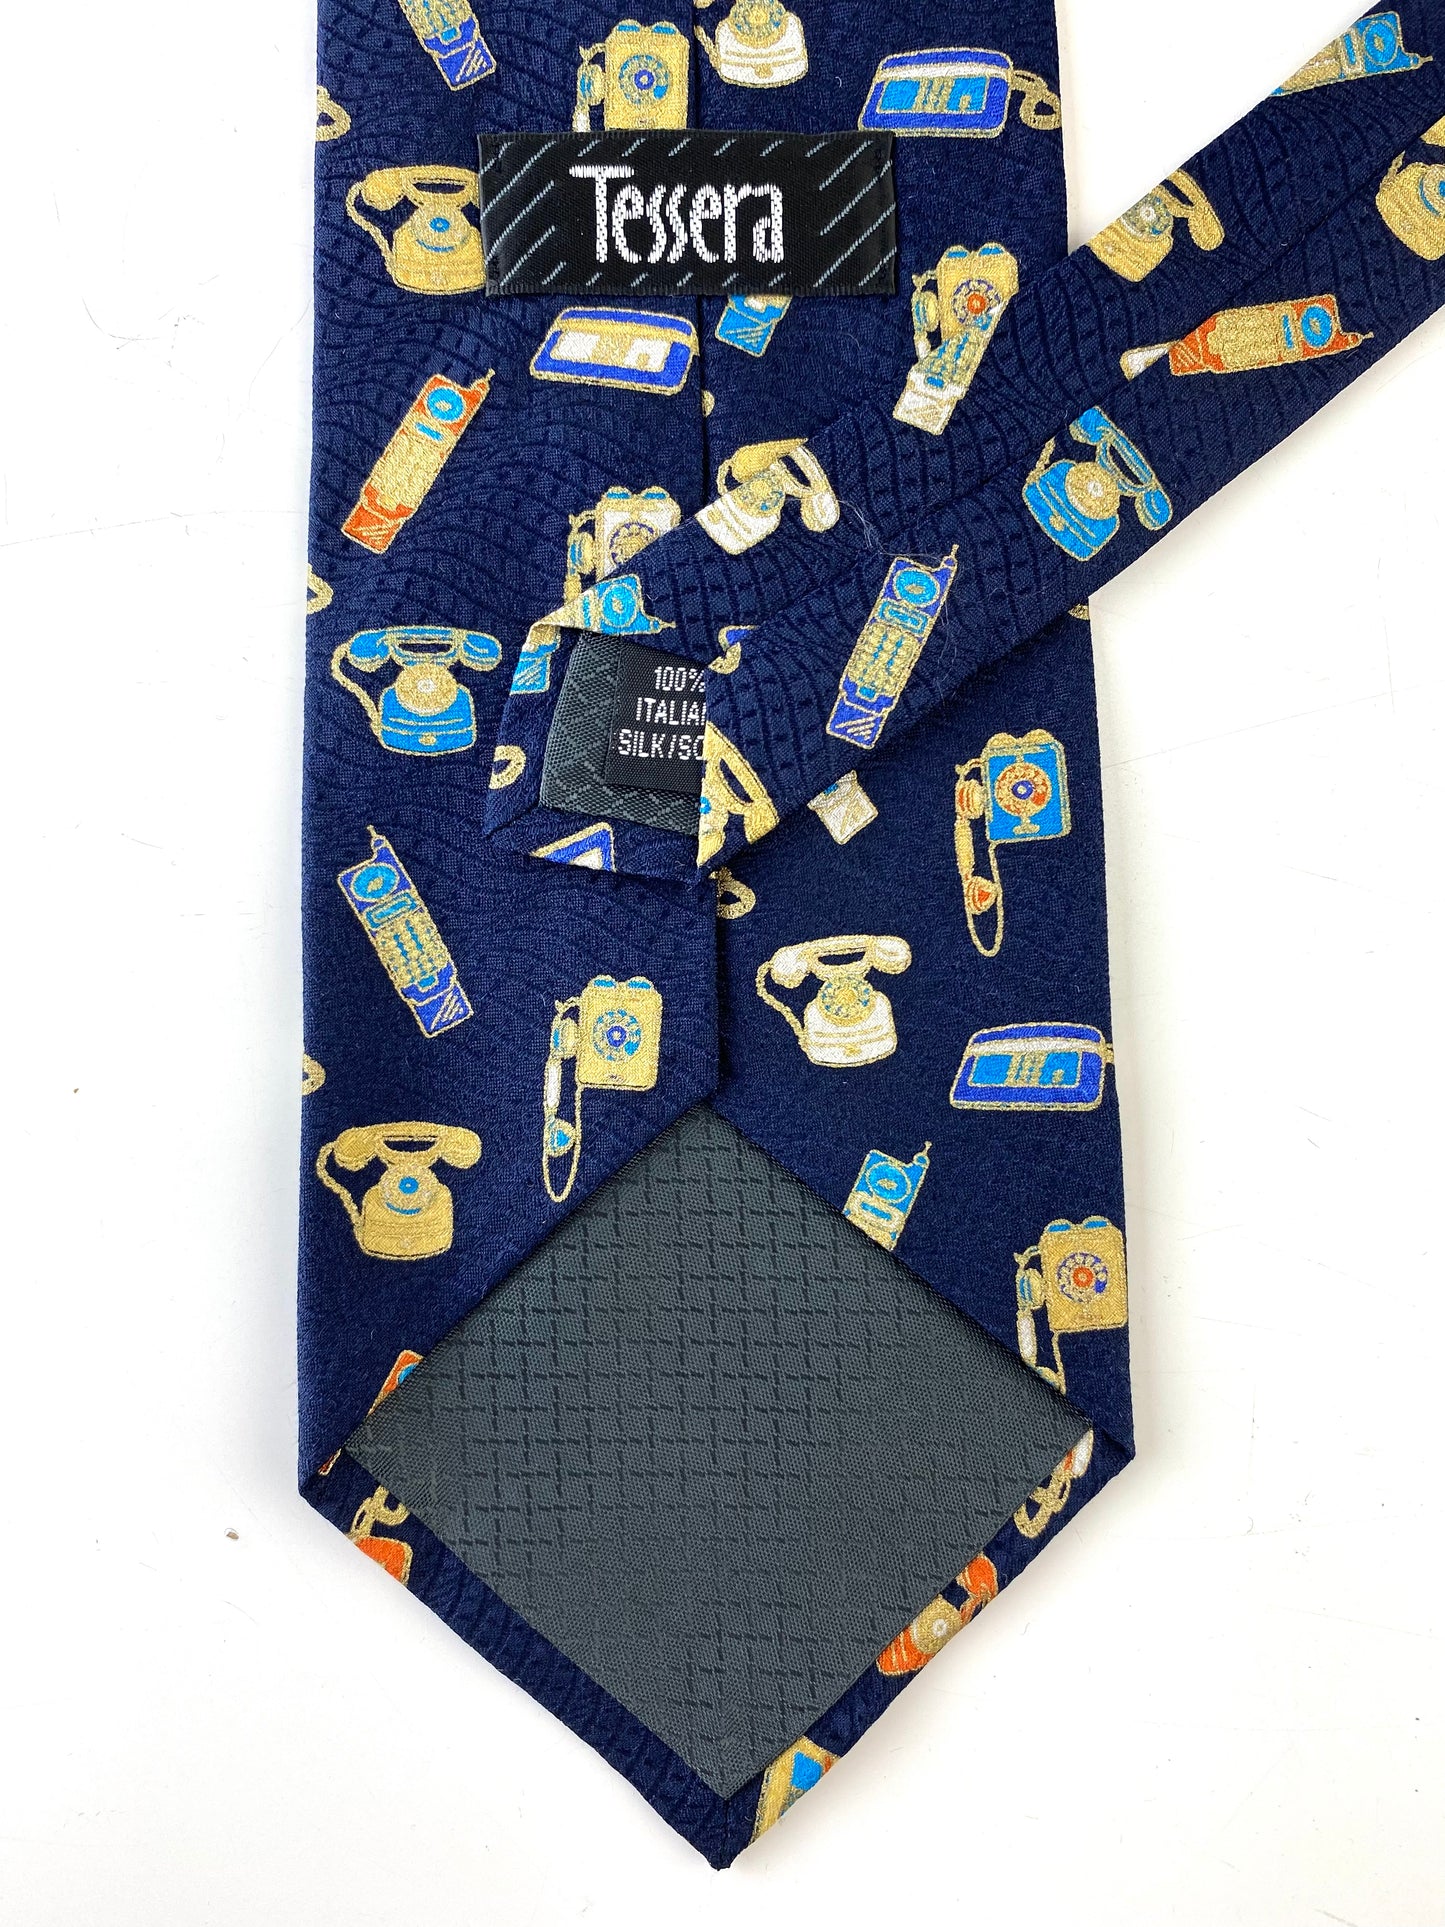 Back and labels of: 90s Deadstock Silk Necktie, Men's Vintage Navy Metallic Novelty Telephone Print Tie, NOS